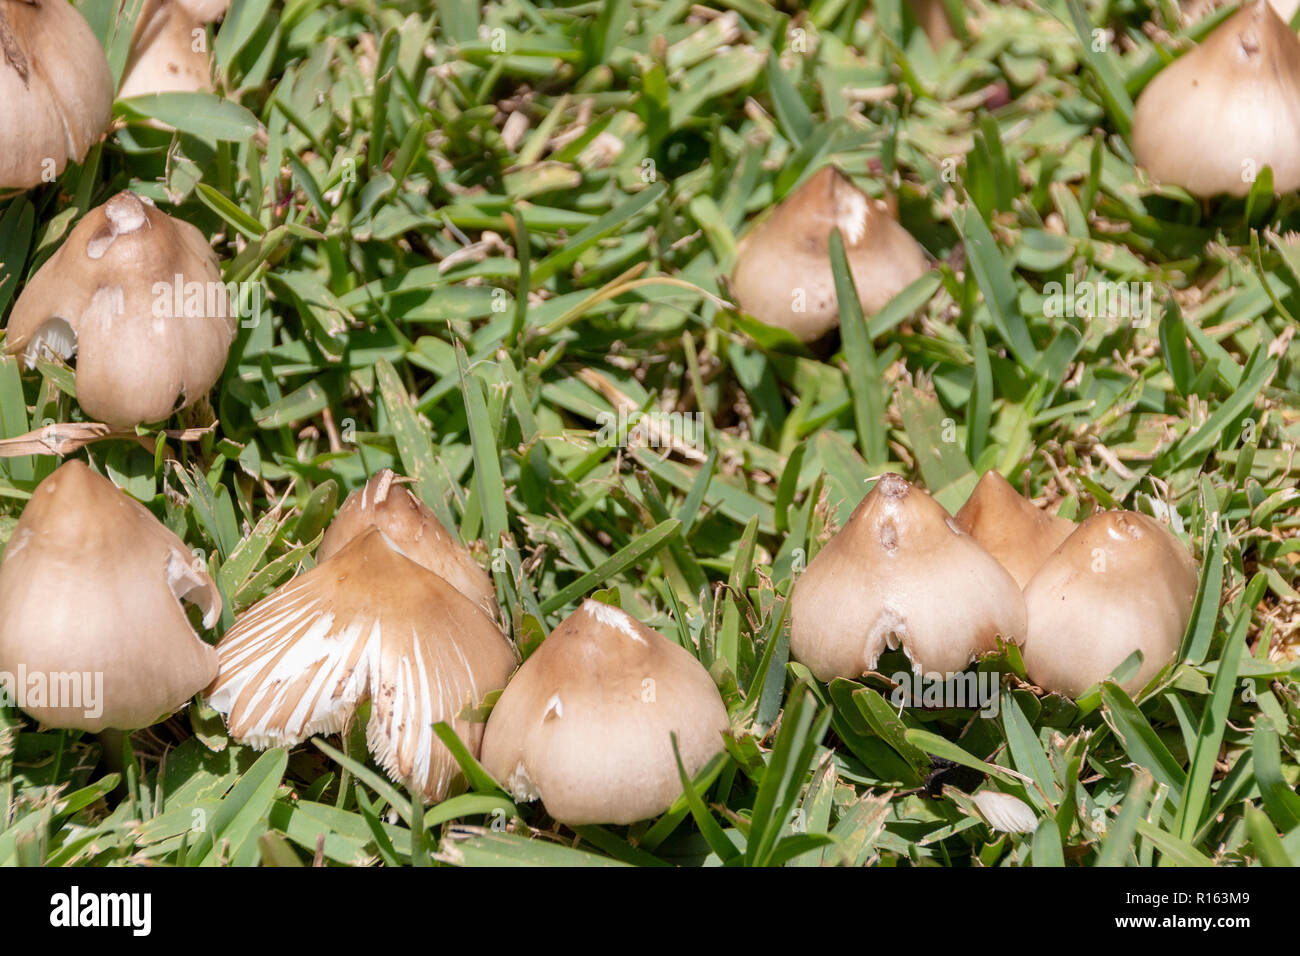 Eine Nahaufnahme der wilde braune Pilze wachsen und durch das grüne Gras in einen Garten Stockfoto